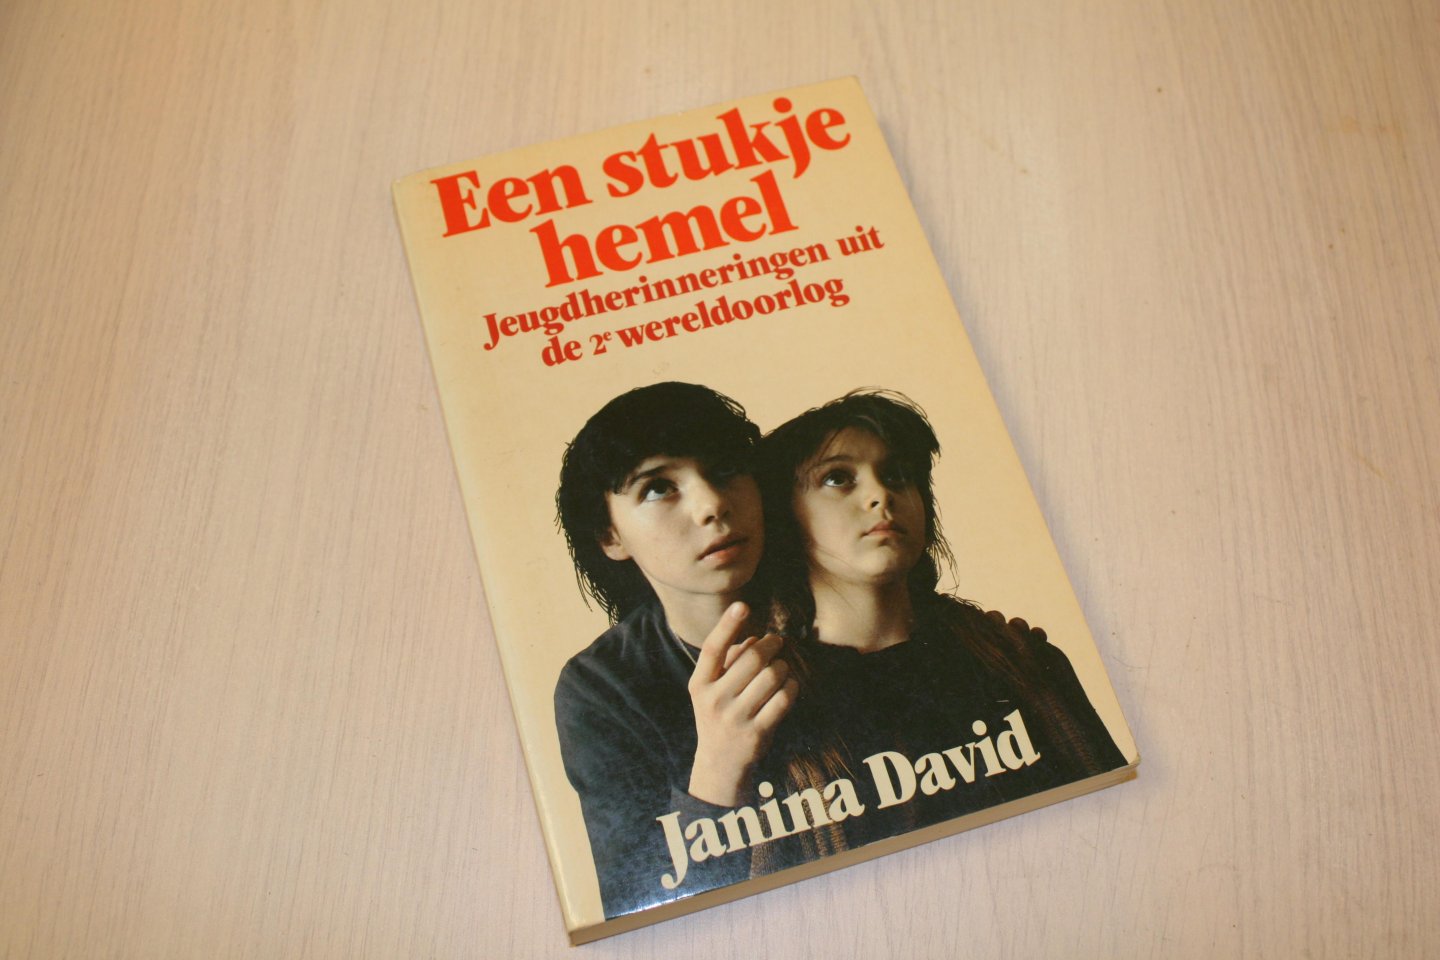 David, Janina - 2 boeken -  Een stukje aarde en Een stukje hemel - Jeugdherinneringen uit de 2e wereldoorlog.